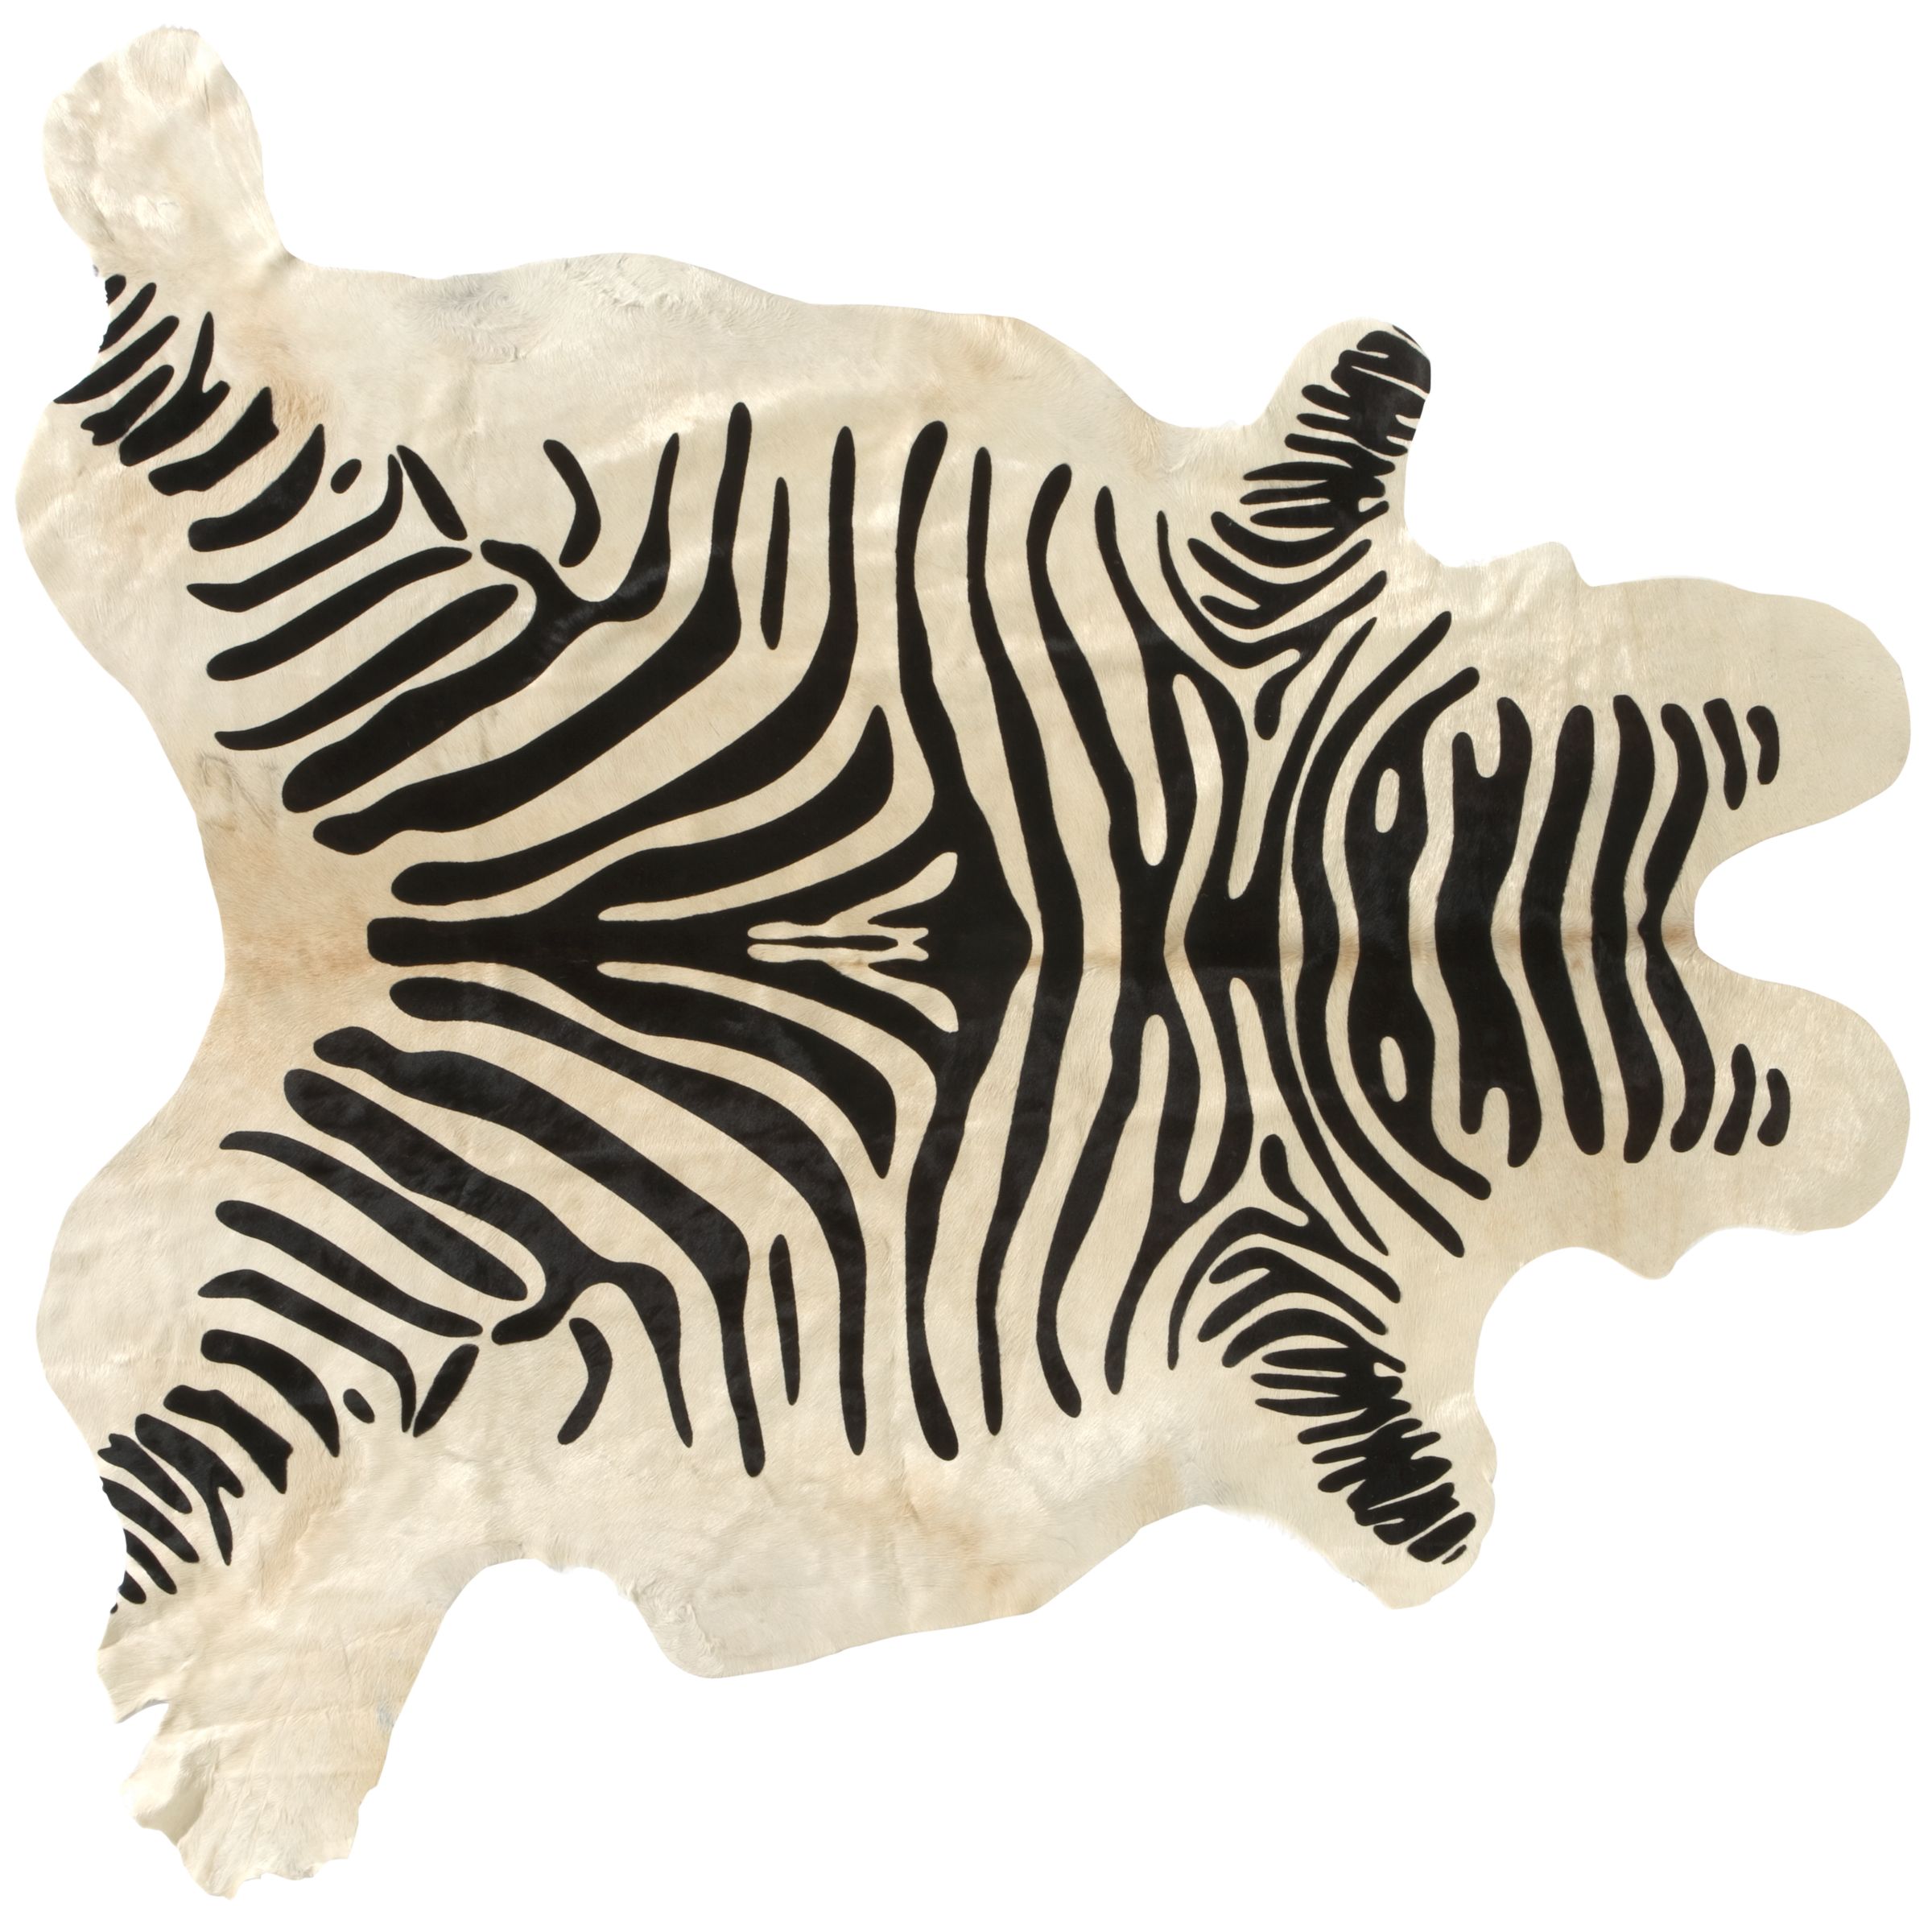 Zebra Print Cow Hide Rug at JohnLewis